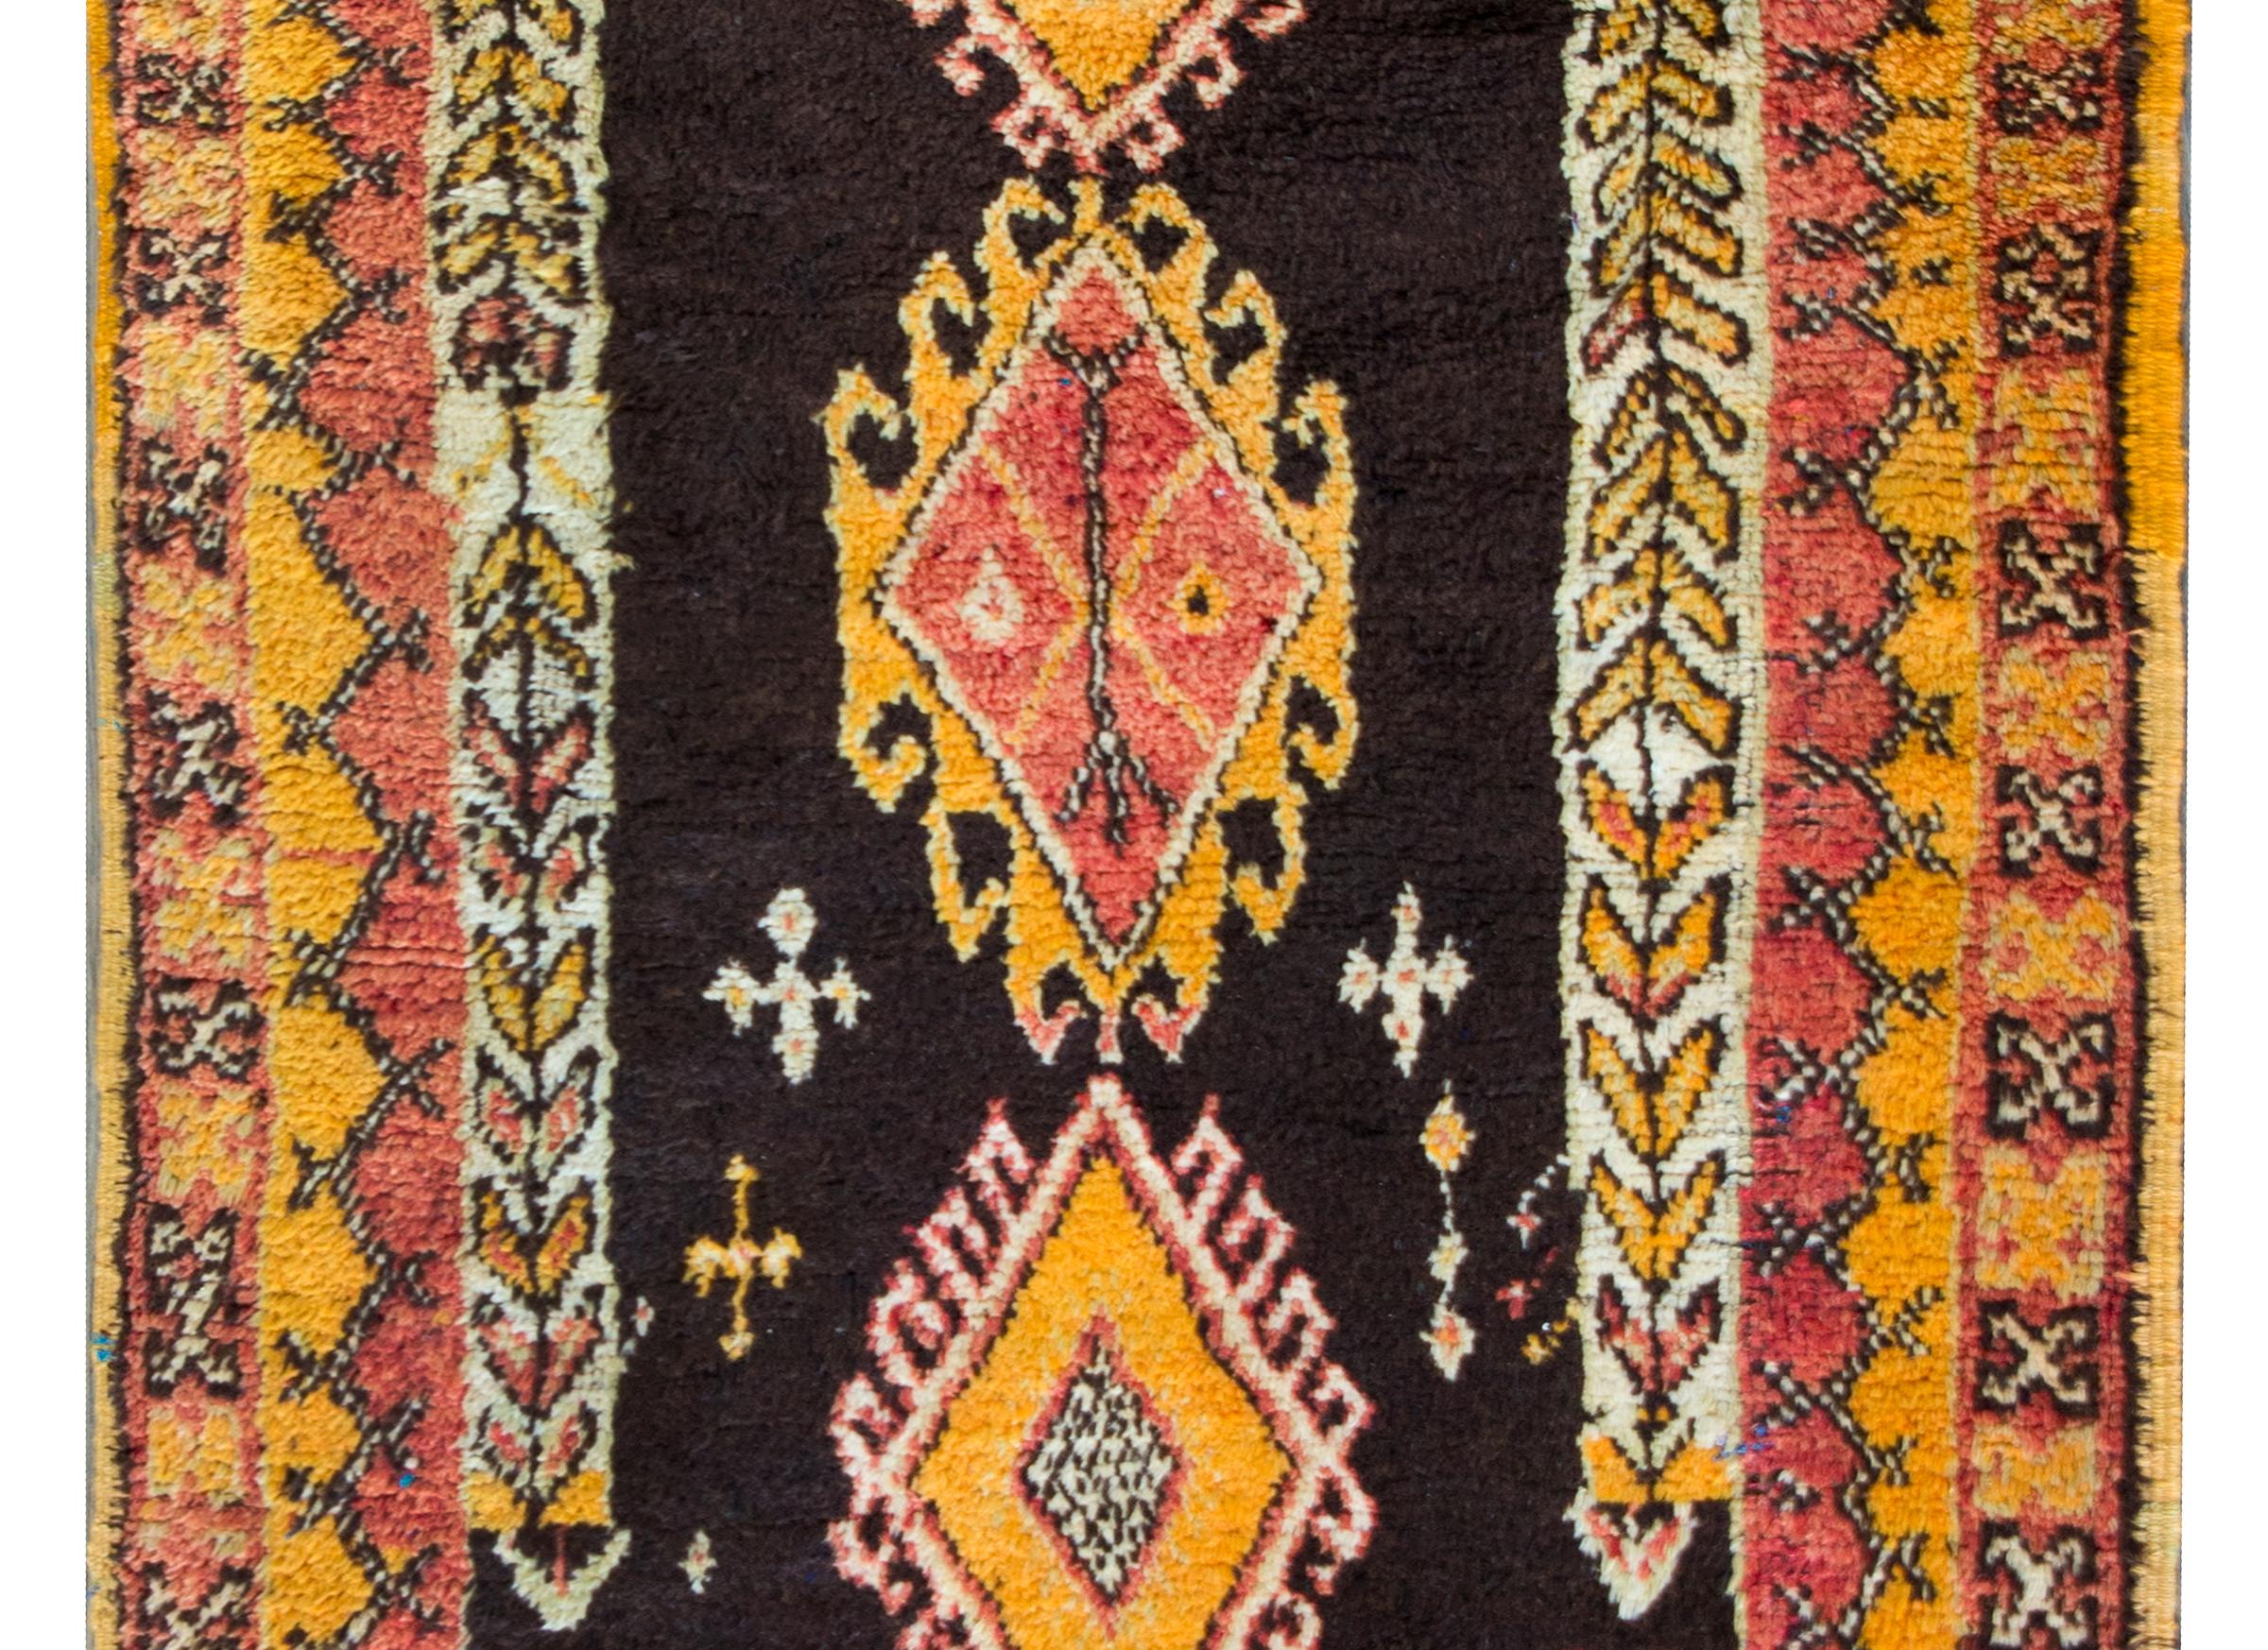 Ein wunderbarer marokkanischer Teppich aus der Mitte des 20. Jahrhunderts mit drei großen zentralen Rautenmedaillons mit stilisierten Blumenbordüren auf braunem Grund, die von einer komplexen Bordüre mit zierlichen, sich wiederholenden, geometrisch